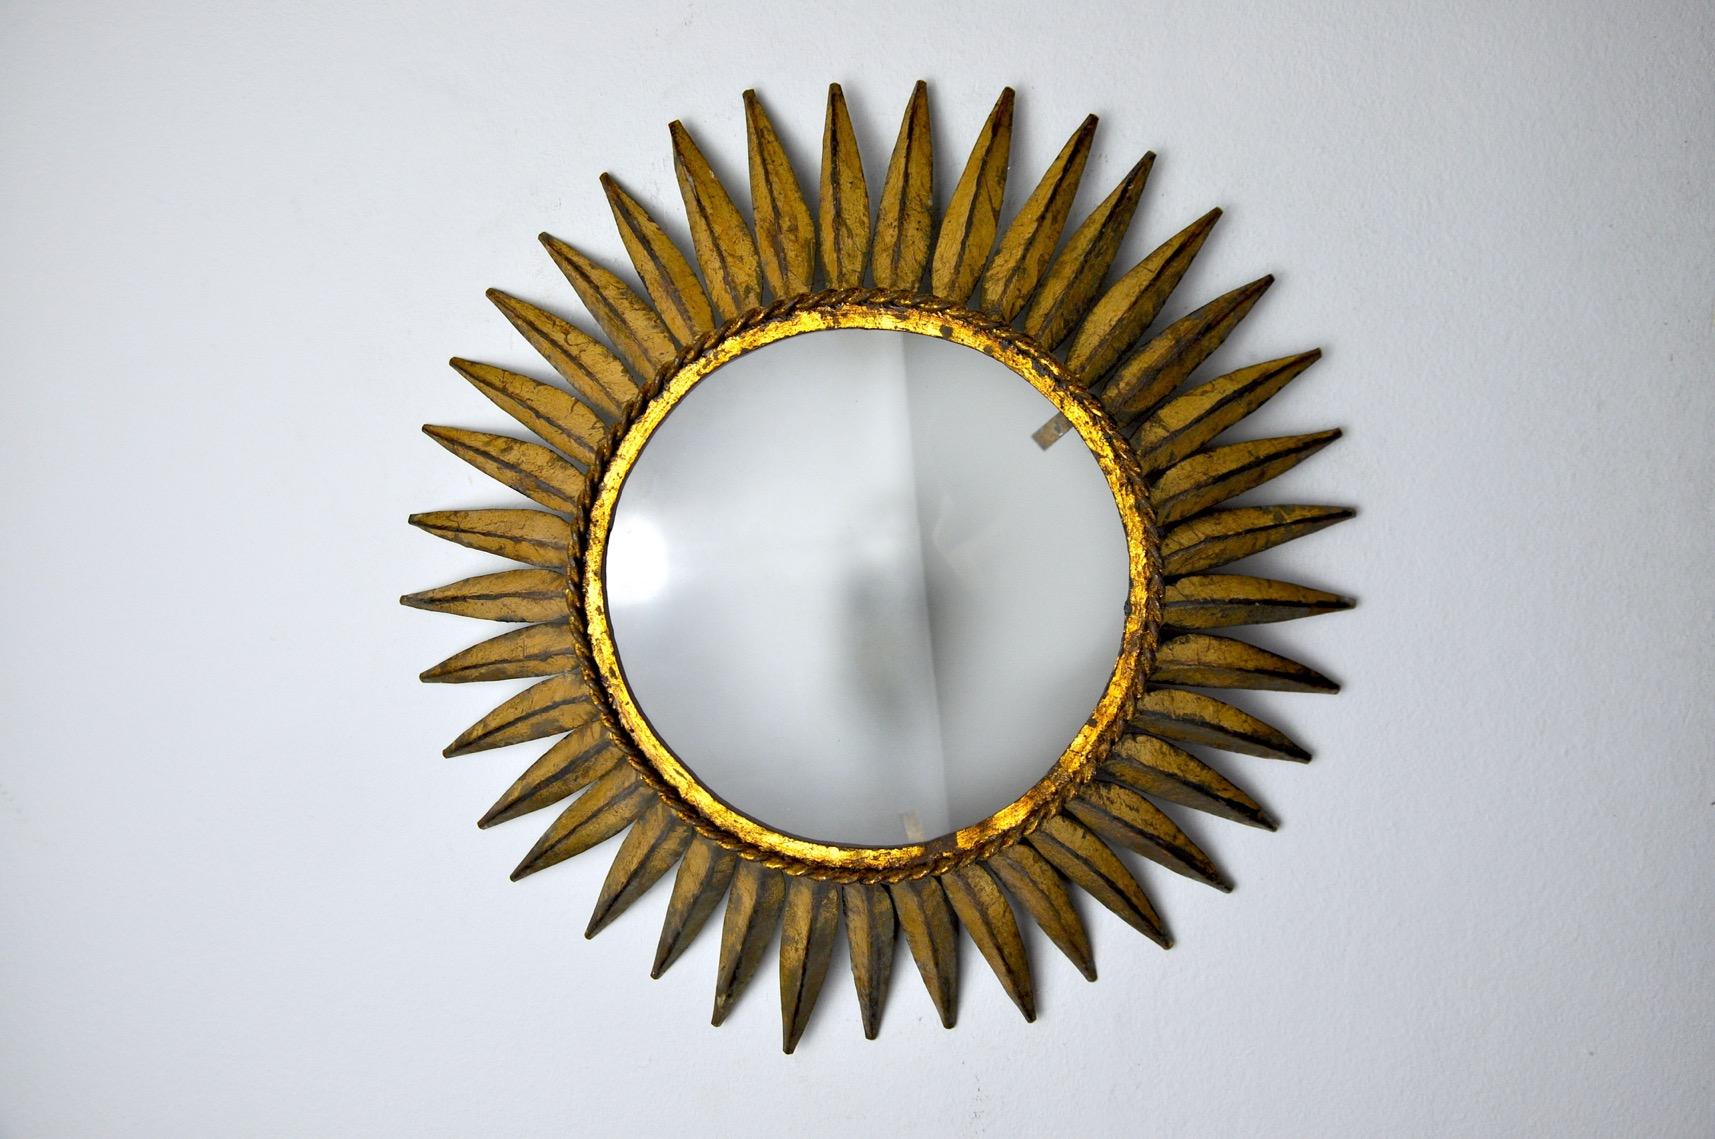 Très belle applique solaire, conçue et produite par Ferro Arte en Espagne dans les années 1960. Structure en métal doré à la feuille d'or et cristal blanc opaque. Objet unique qui s'illuminera merveilleusement et apportera une véritable touche